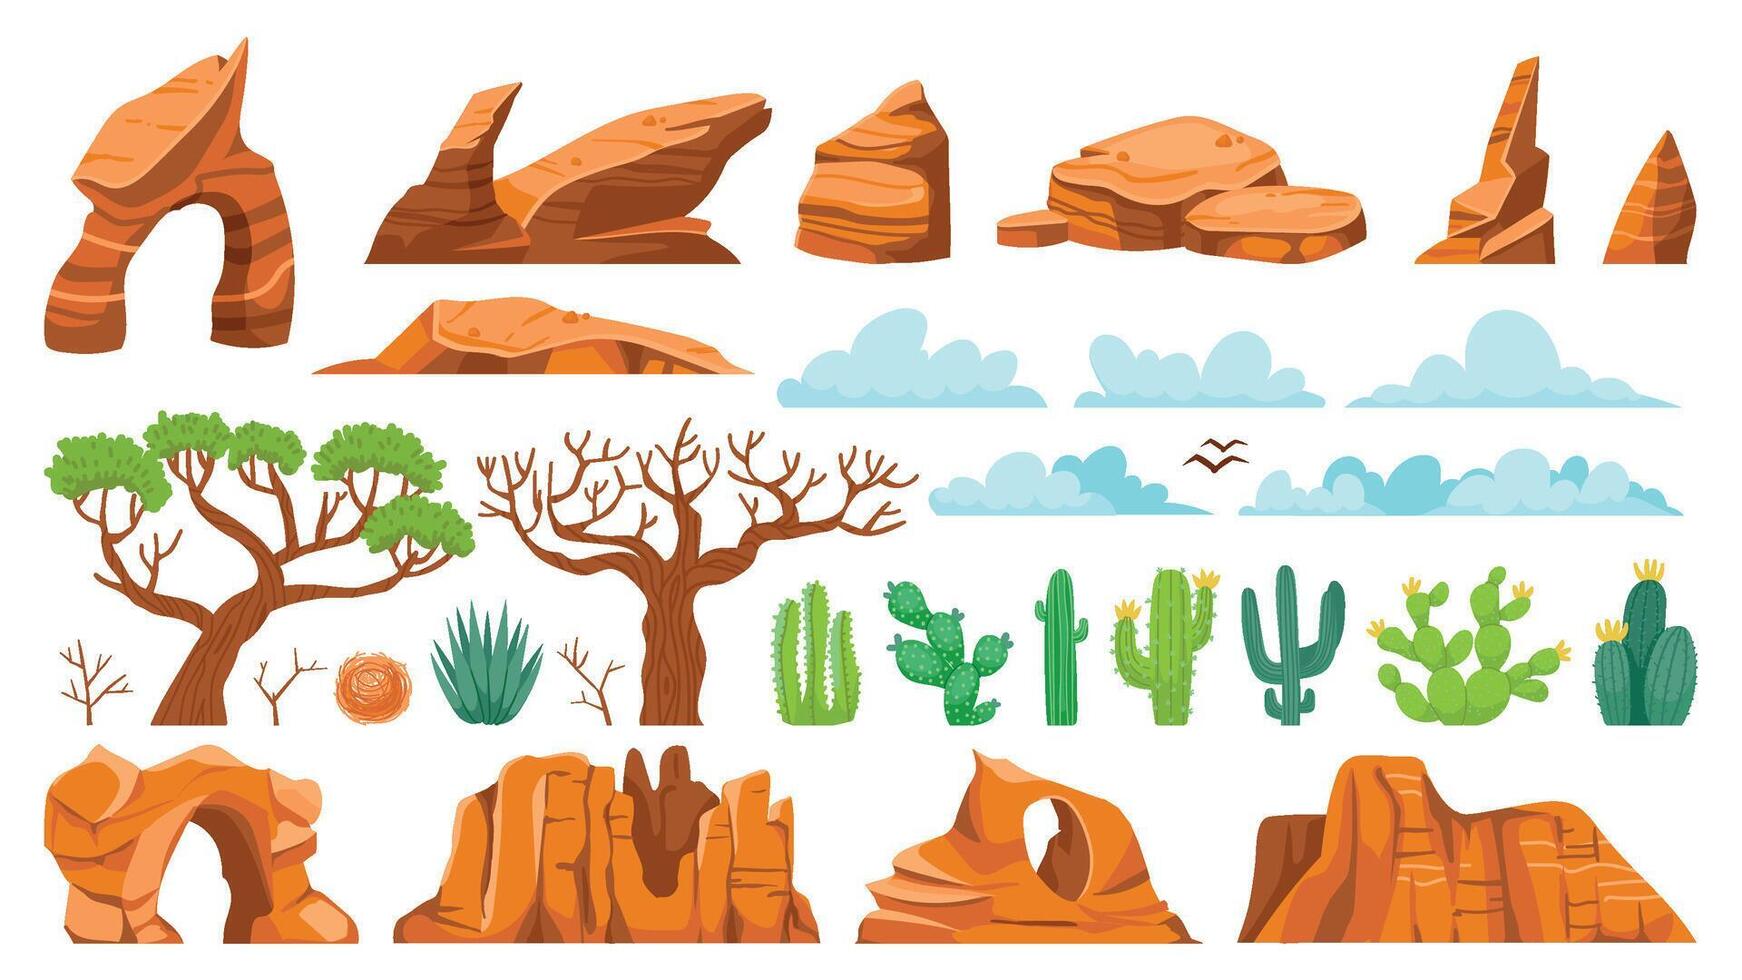 öken- kaktus myra rocks. tecknad serie ökenbuske, sand stenar, och saftig, exotisk landskap element. vektor isolerat uppsättning